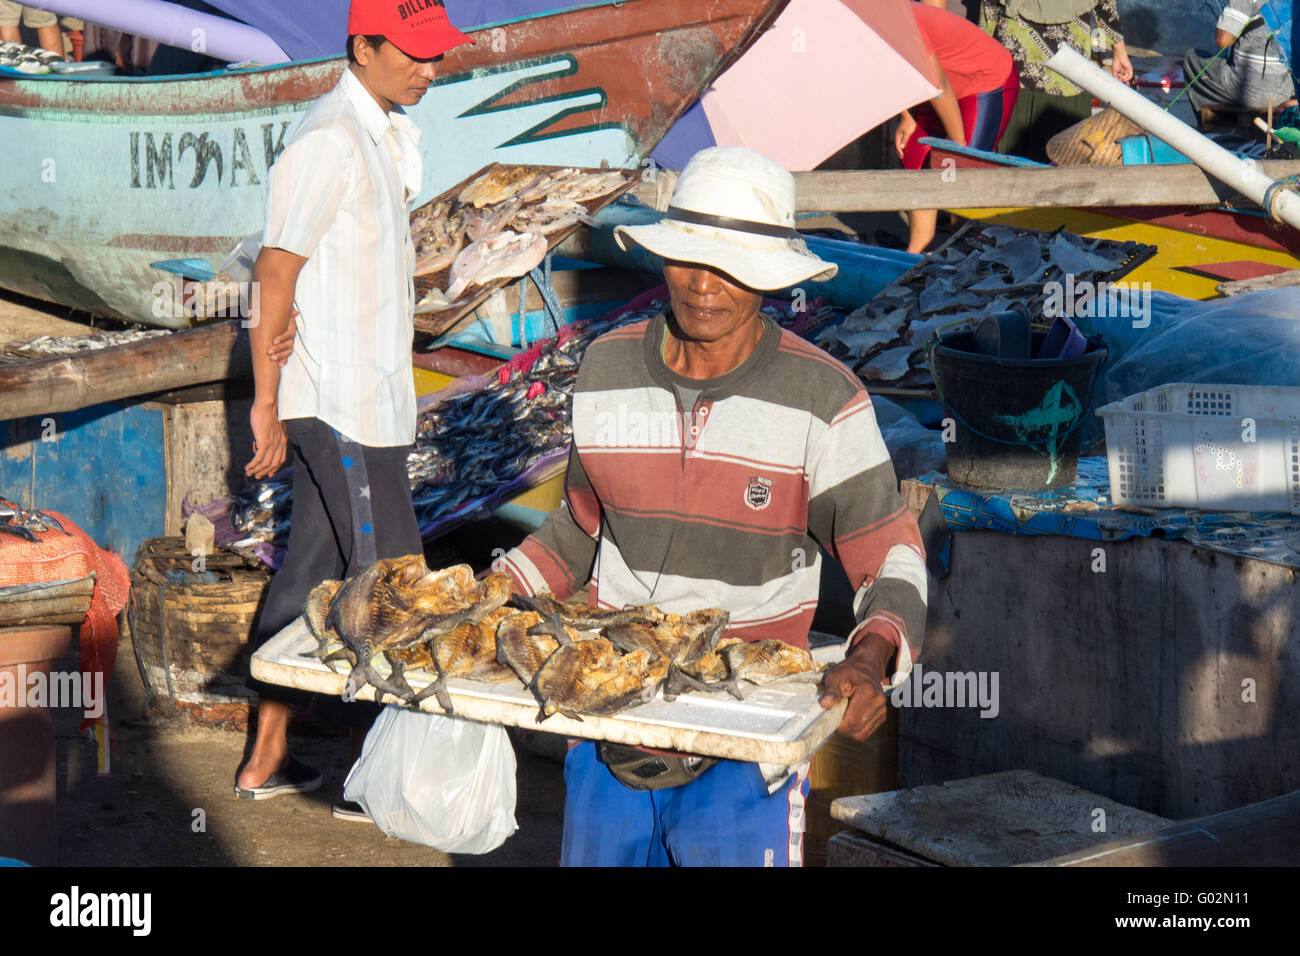 A man carrying a tray of dried fish at the Jimbaran Bay Fish Markets. Stock Photo